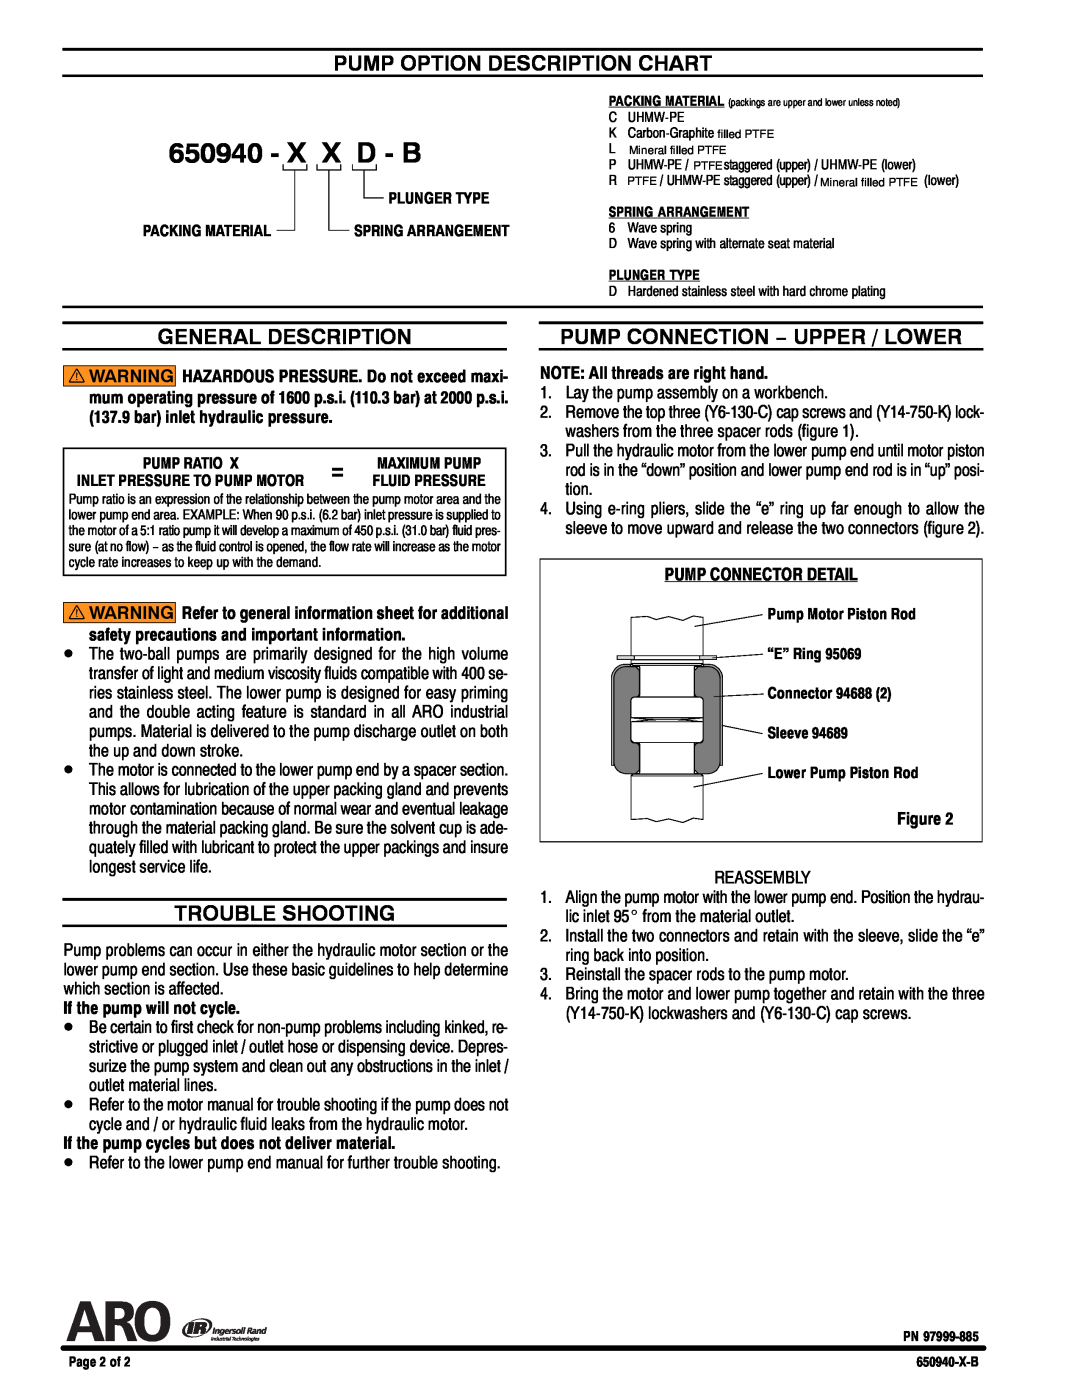 Ingersoll-Rand 650940-XXD-B specifications Pump Option Description Chart, General Description, Trouble Shooting, X X D - B 